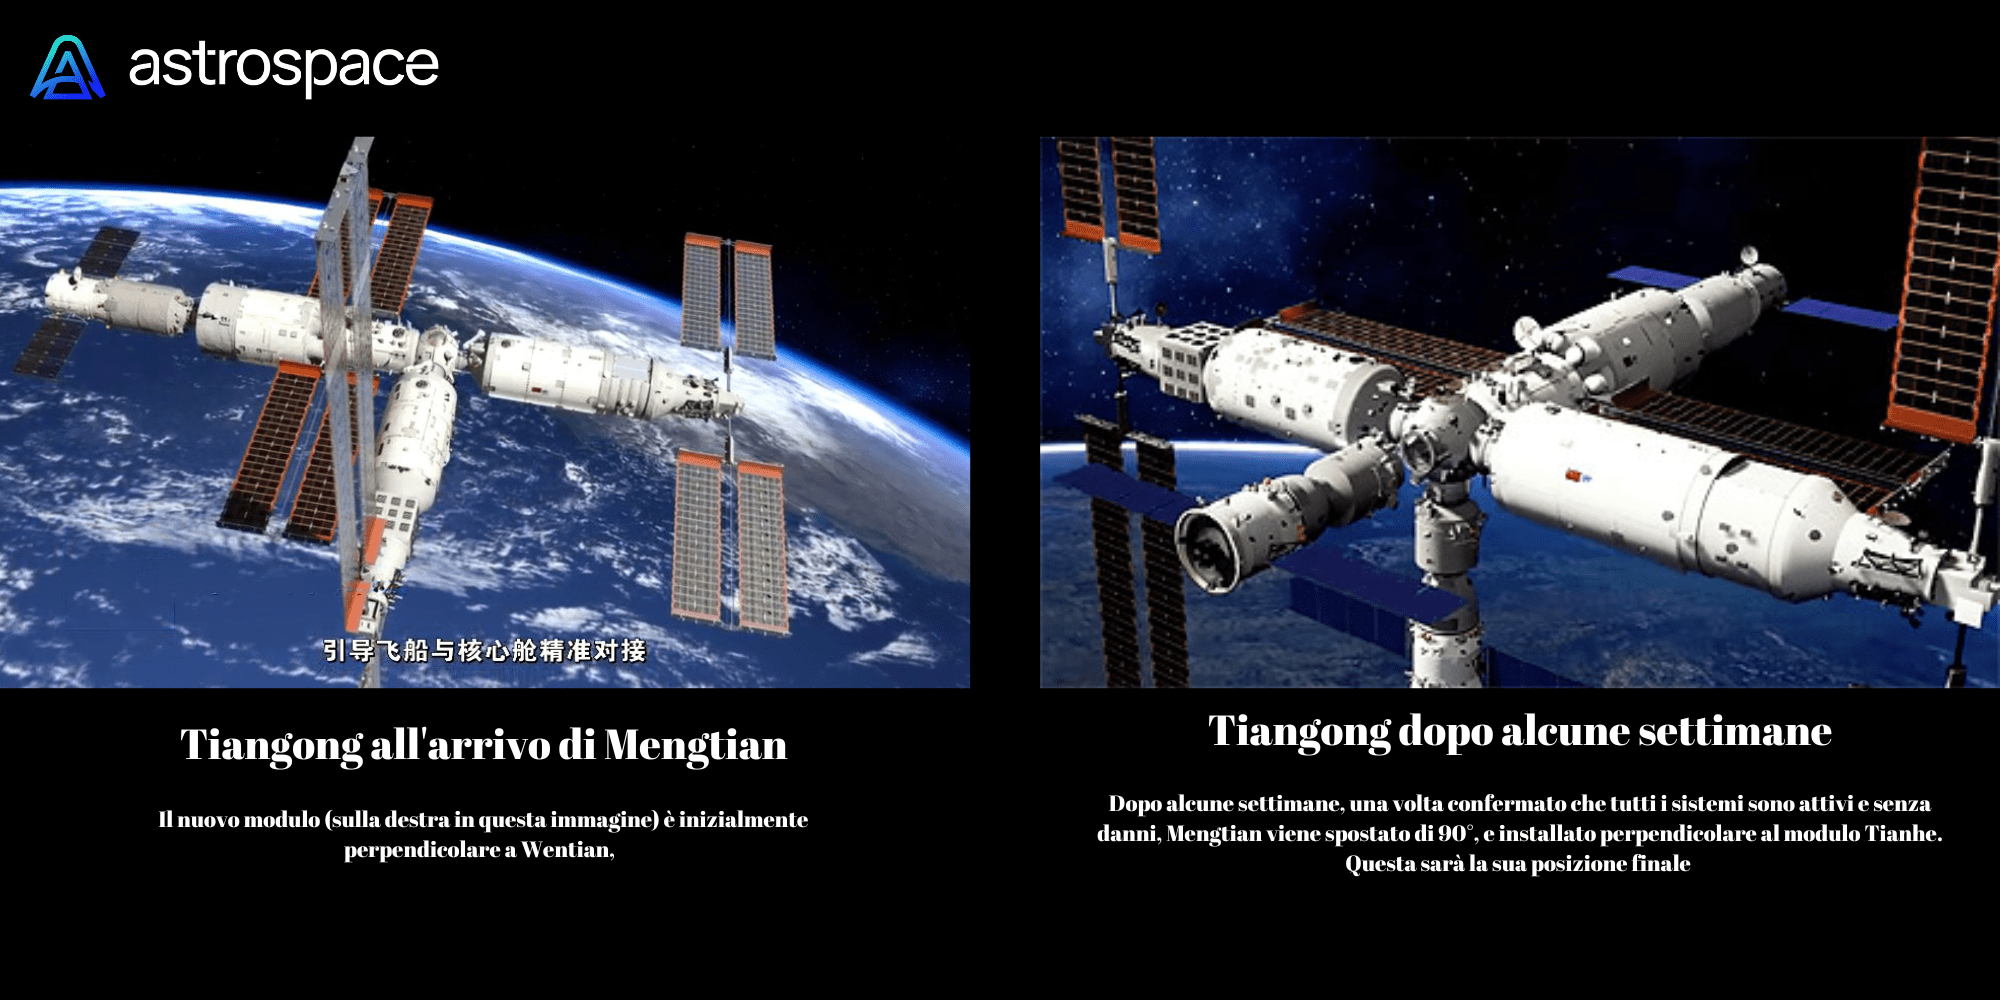 Render della forma che avrà la Tiangong all'arrivo di Mengtian. Credits: Astrospace.it